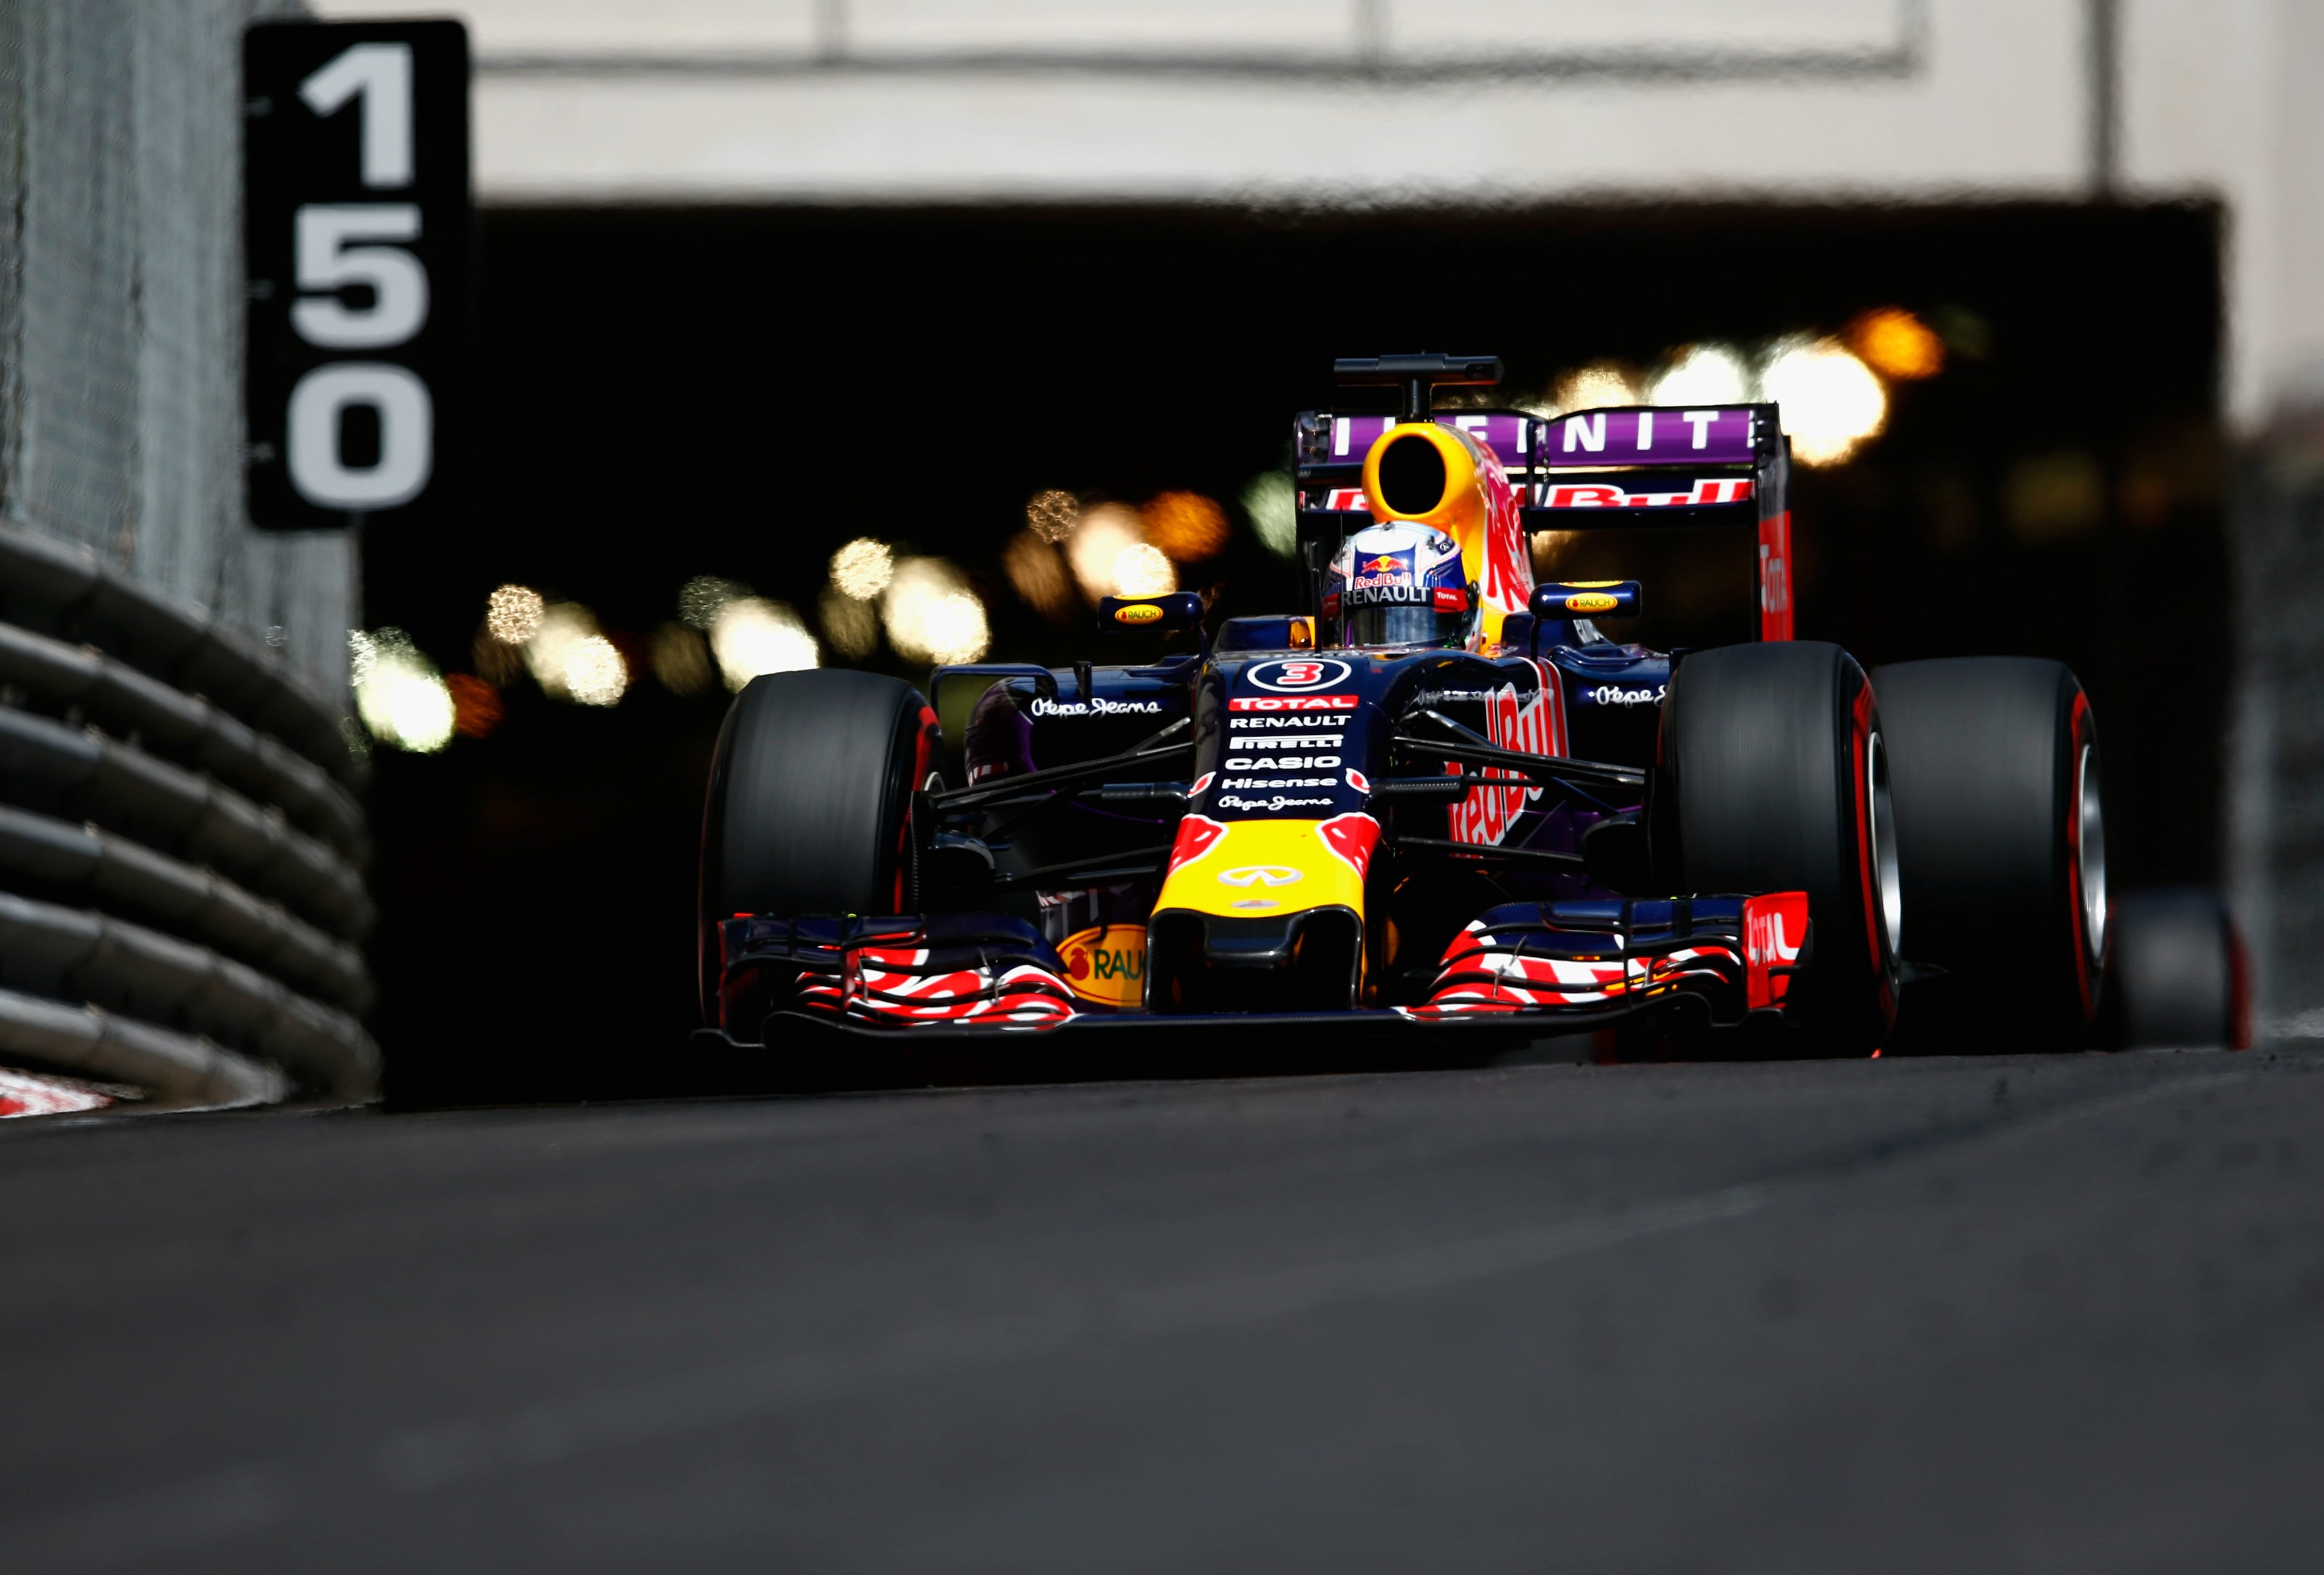 Daniel Ricciardo exits the tunnel at the 2016 Monaco Grand Rpix